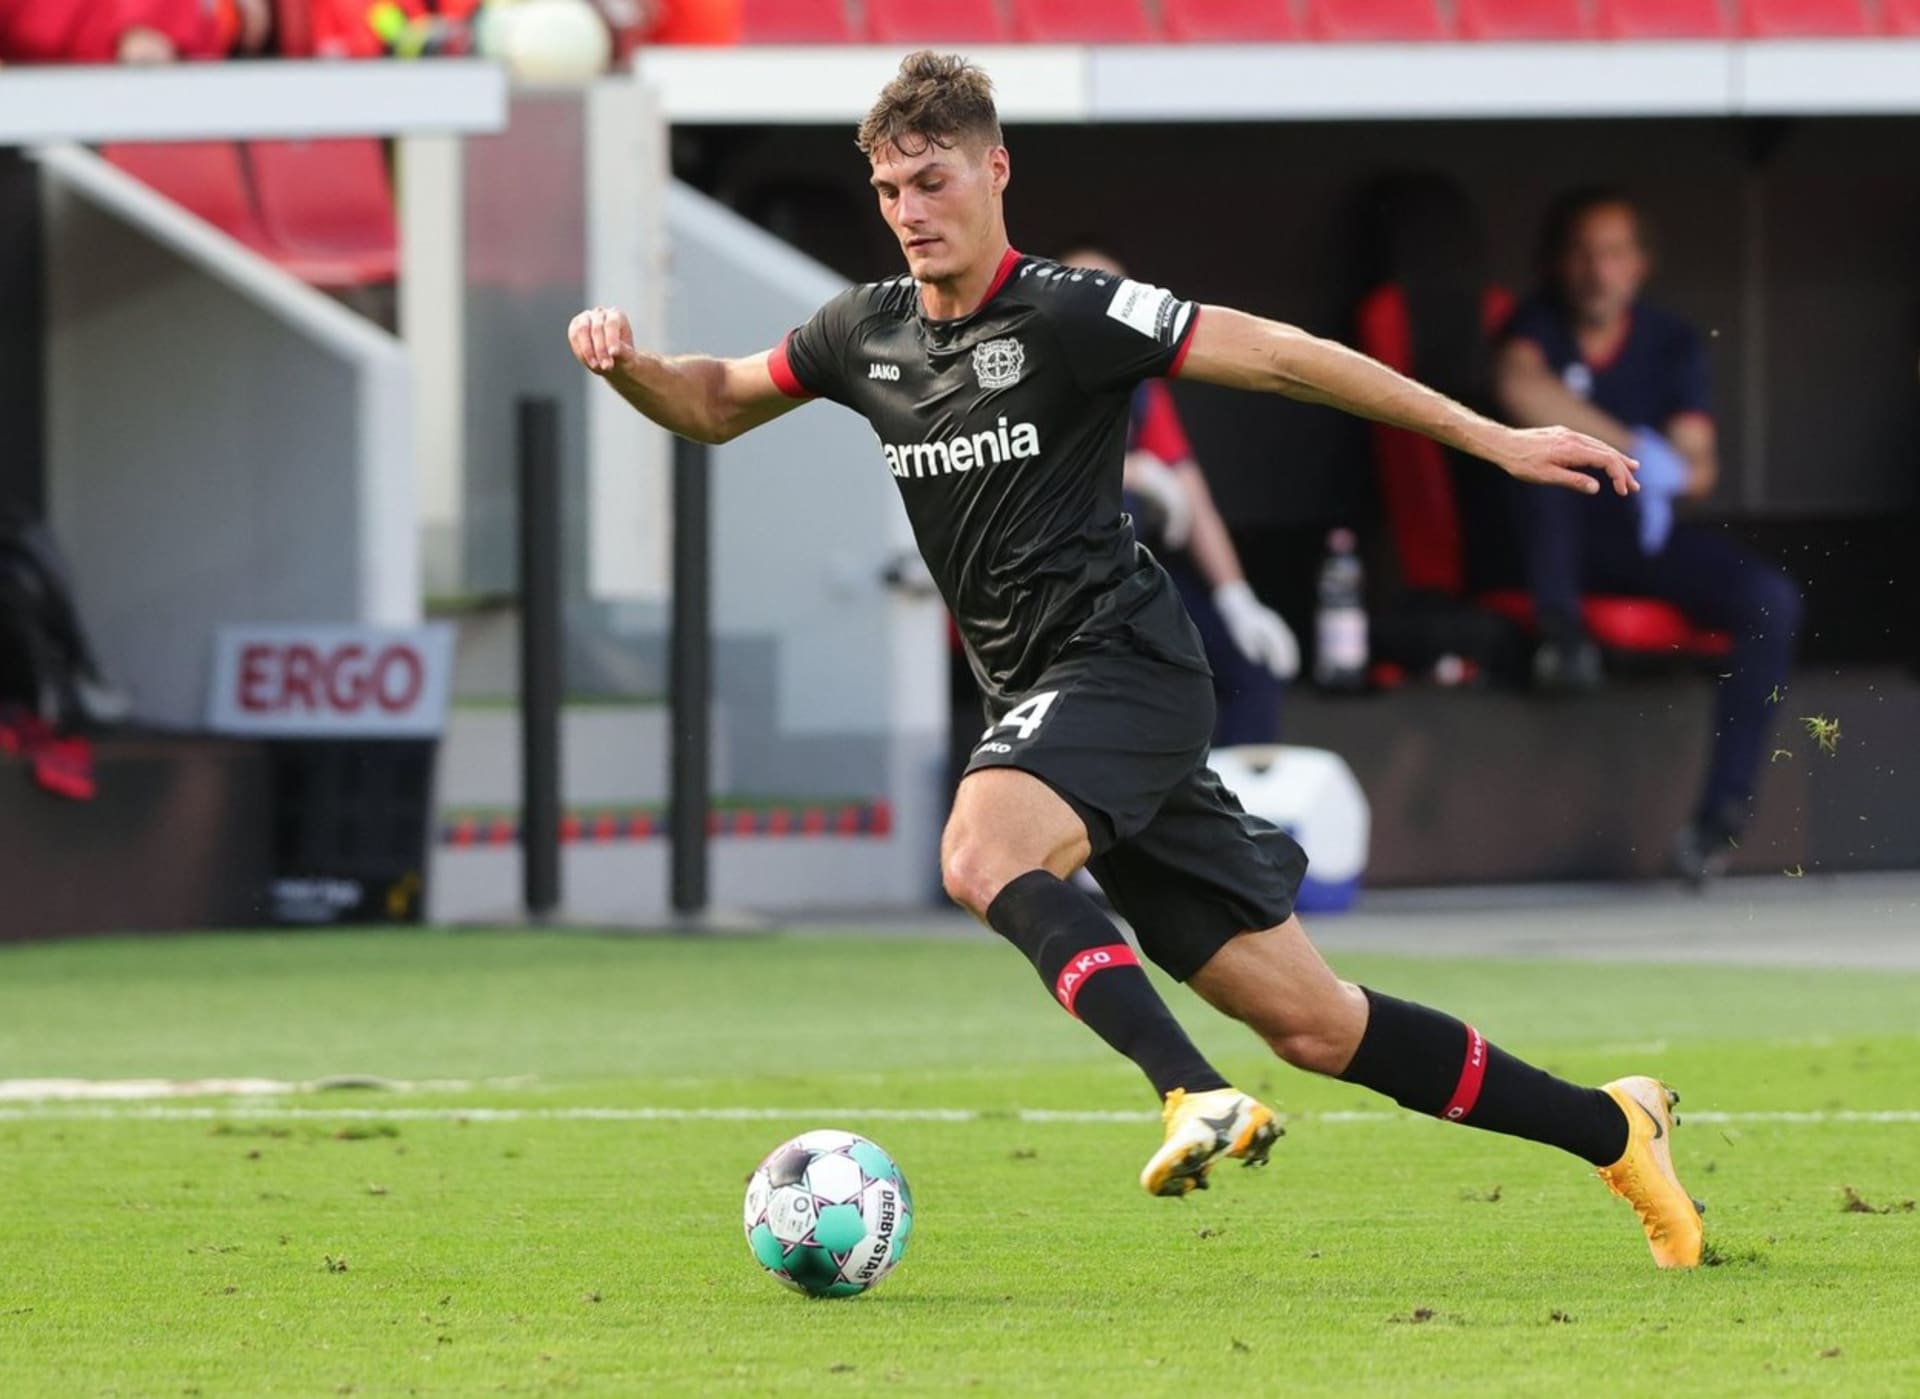 Český fotbalista Patrik Schick přestoupil v polovině září do německého klubu Bayer 04 Leverkusen. Poprvé se v jeho dresu představil před týdnem v Německém poháru a jedním gólem pečetil výhru 7:0. V neděli by měl nastoupit v bundeslize.